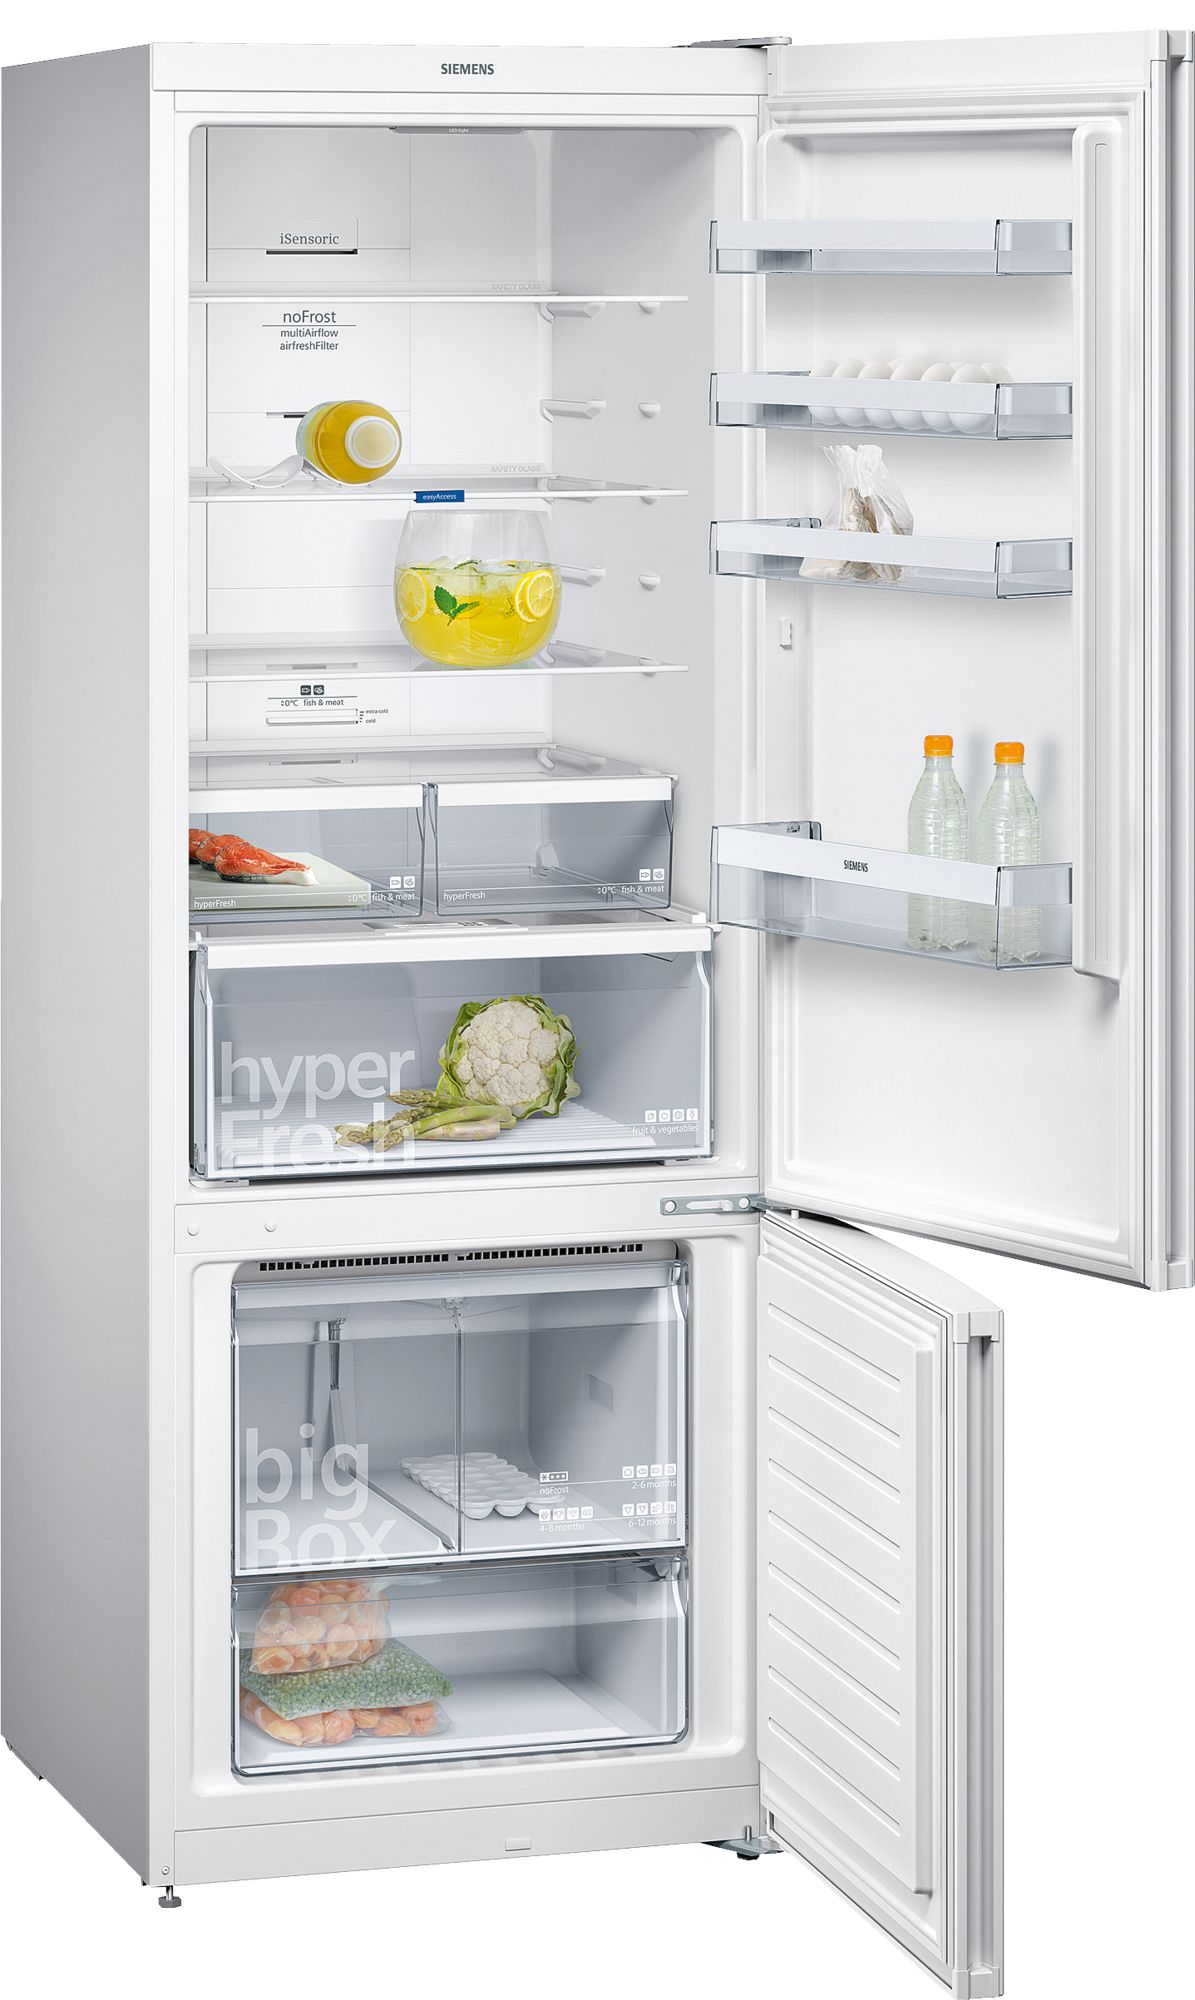 iQ300 Alttan Donduruculu Buzdolabı Beyaz, 70 cm